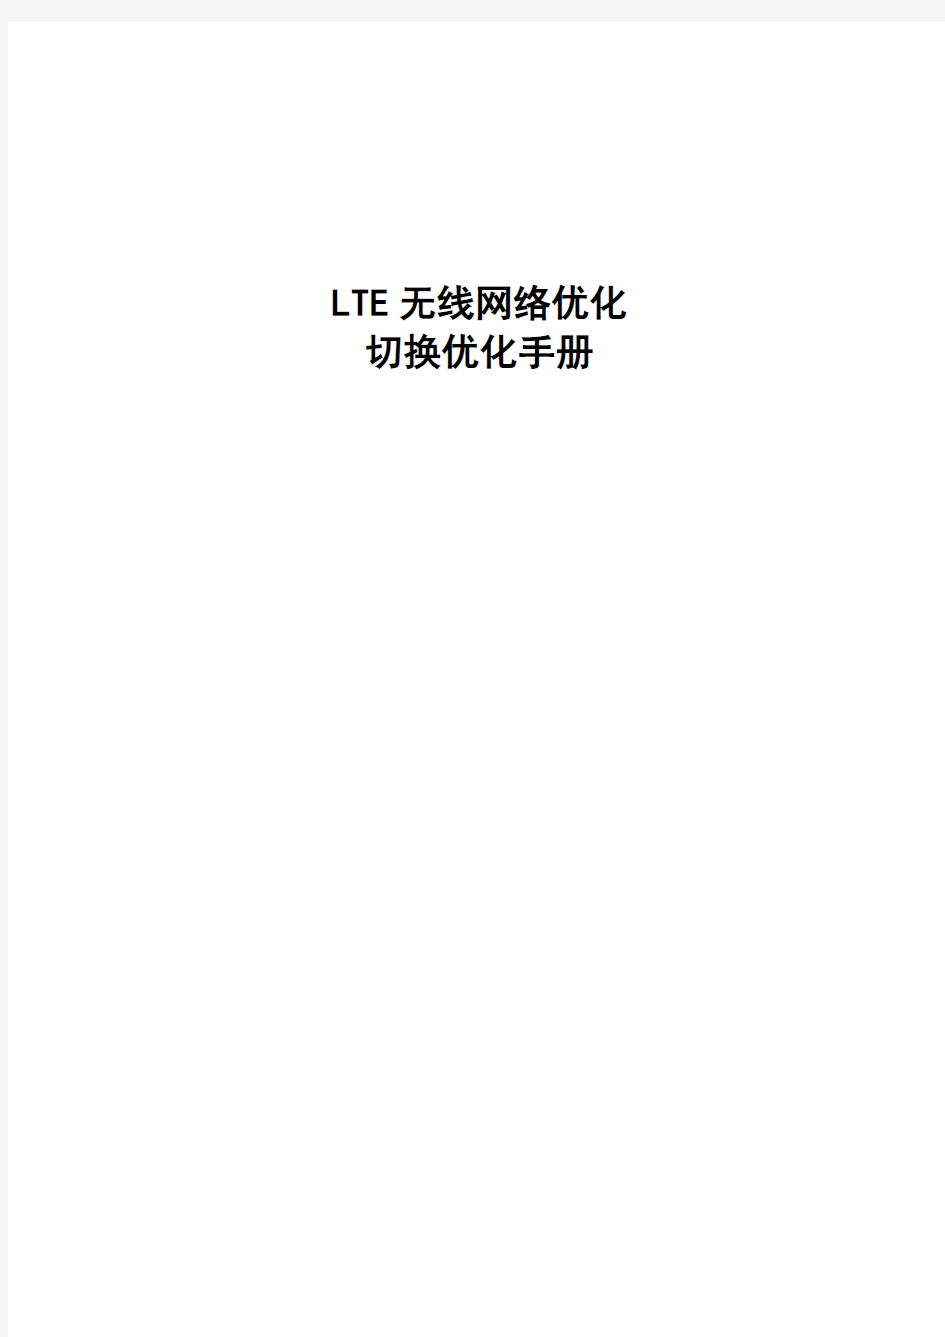 LTE无线网络优化切换优化手册